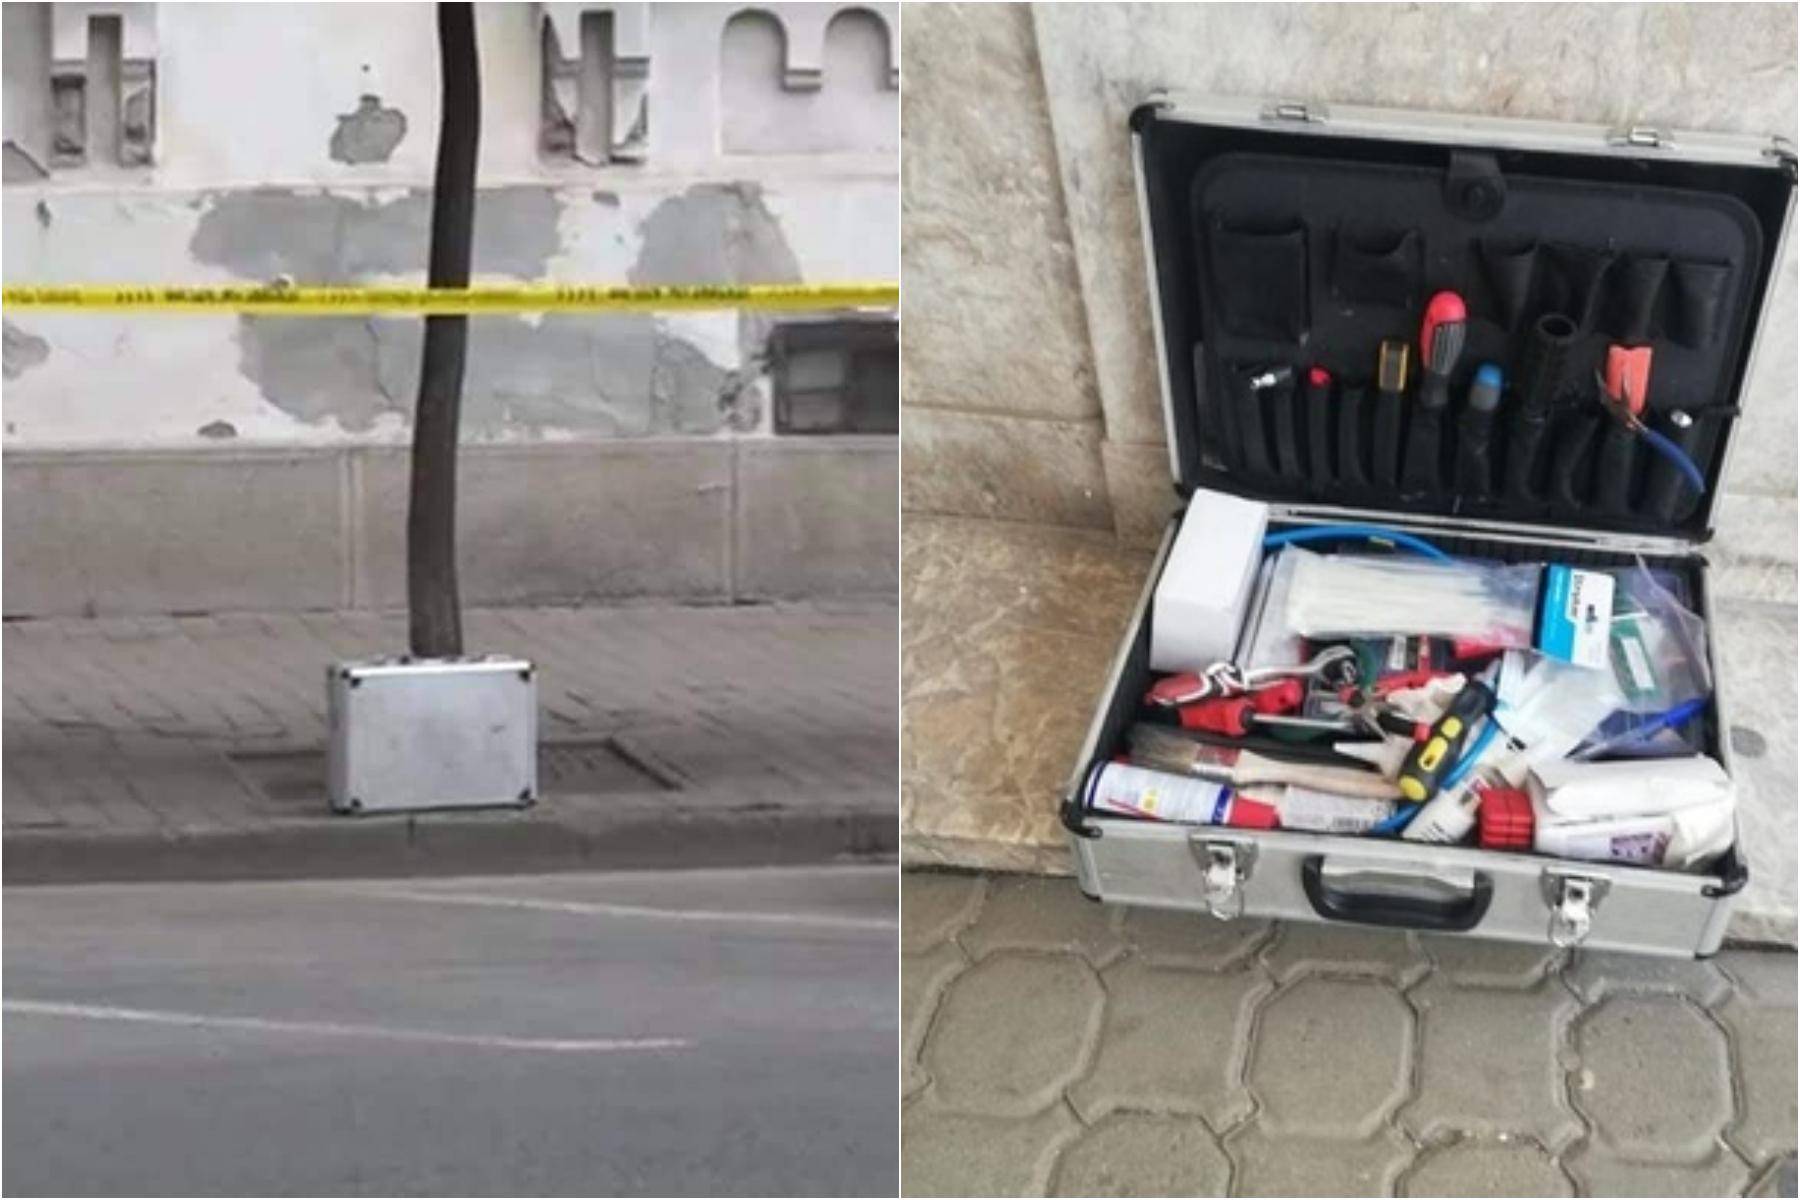 O valiză suspectă a creat panică în Arad! S-a dat imediat alertă cu bombă, însă a fost alarmă falsă